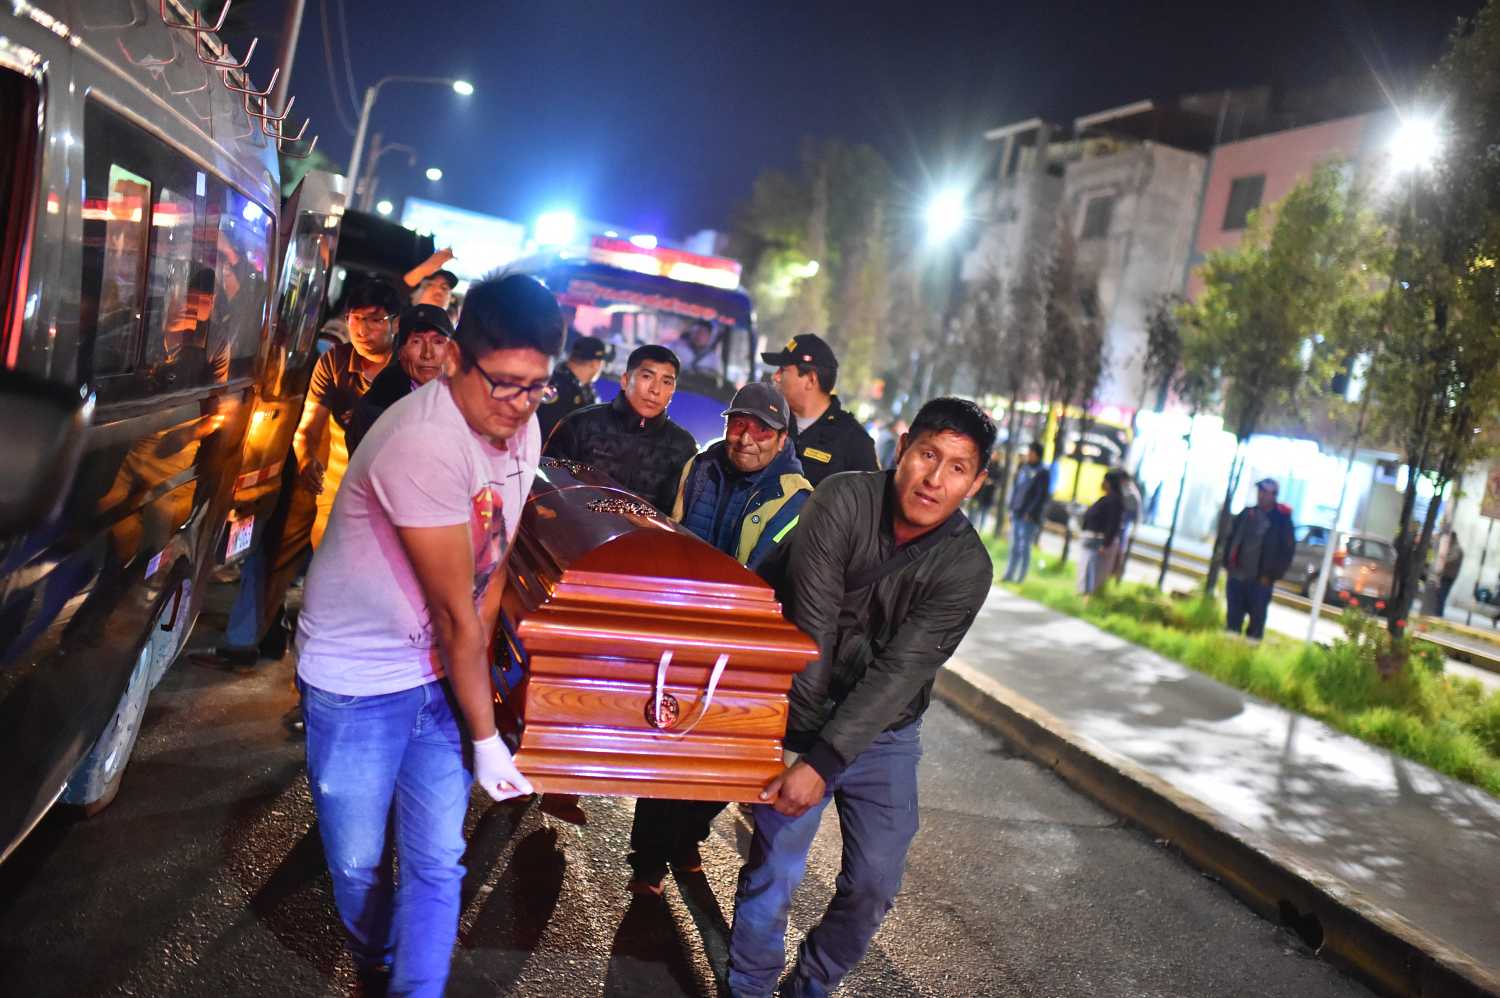 Τραγωδία στο Περού: Νεκροί 27 εργαζόμενοι σε χρυσωρυχείο όπου ξέσπασε φωτιά